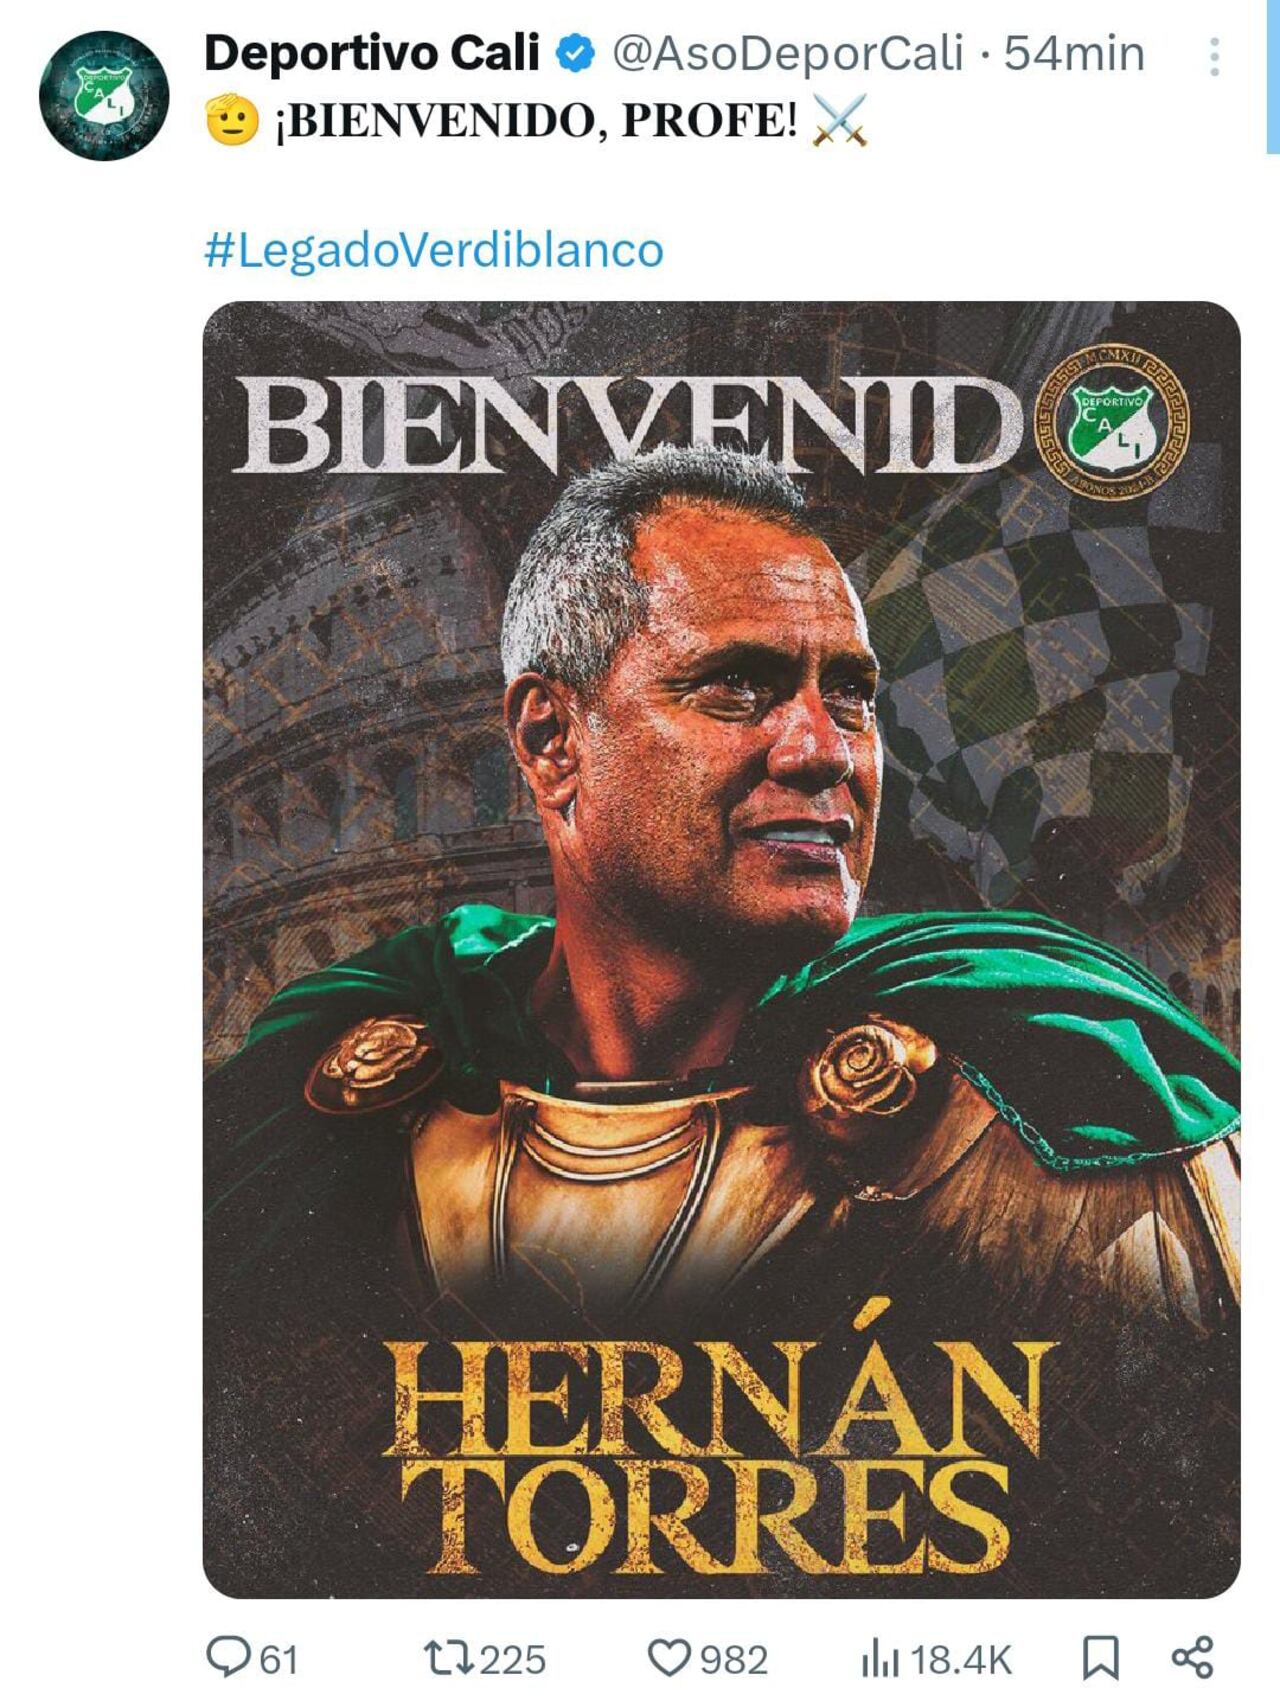 Esta es la imagen con la que el Deportivo Cali le dio la bienvenida a Hernán Torres.